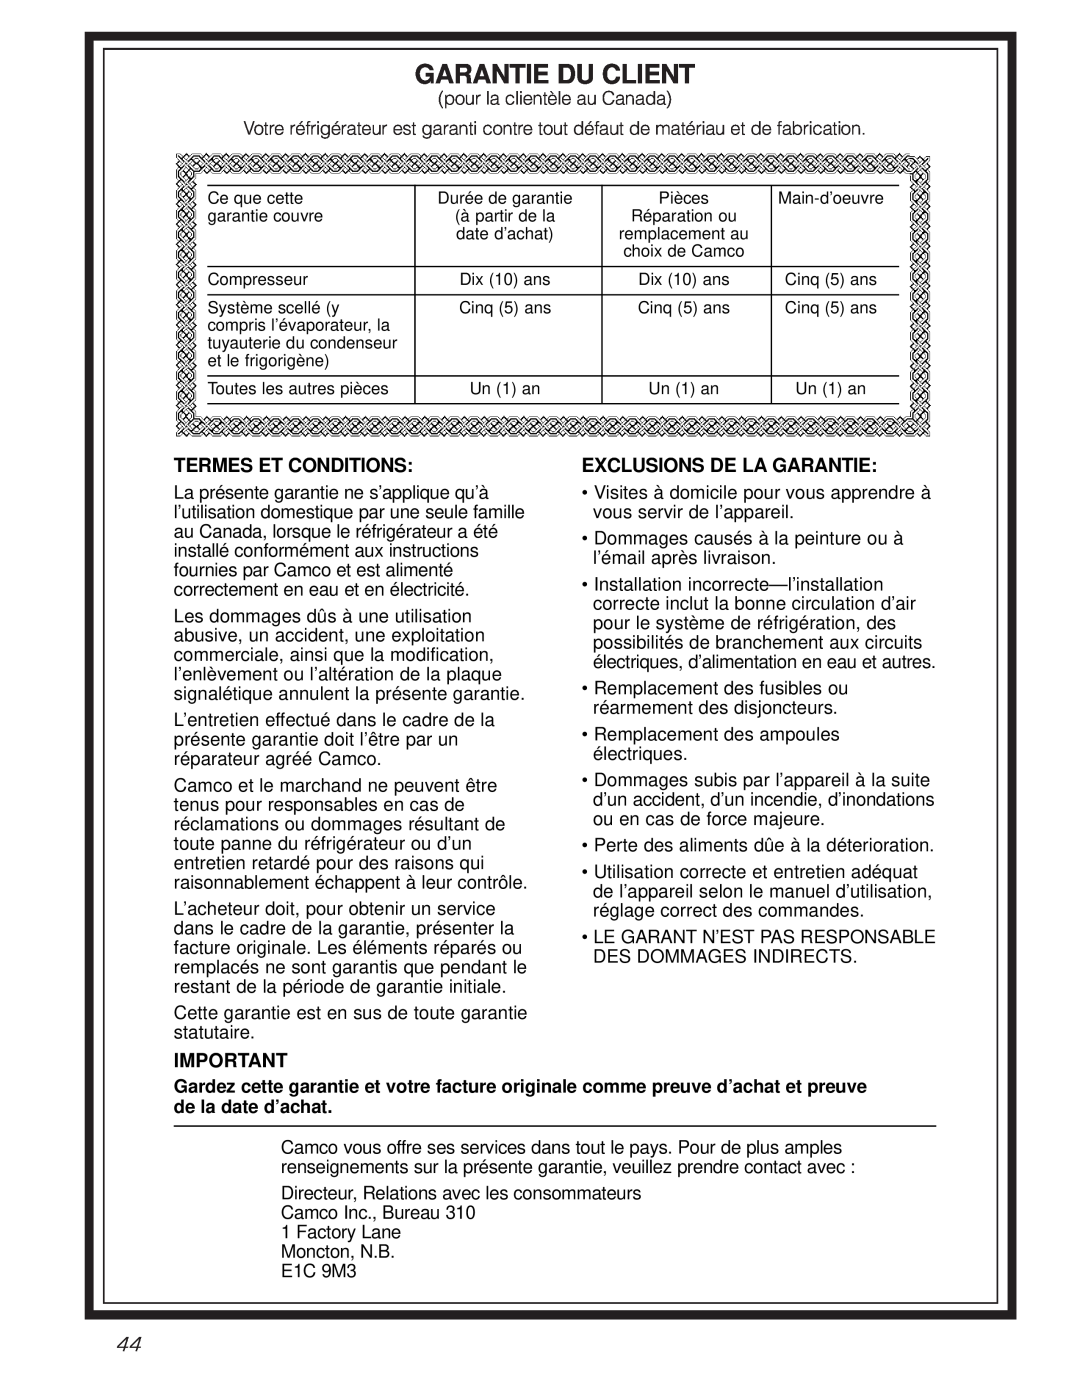 GE 162D6733P007 owner manual Garantie Du Client, Termes Et Conditions, Exclusions De La Garantie 